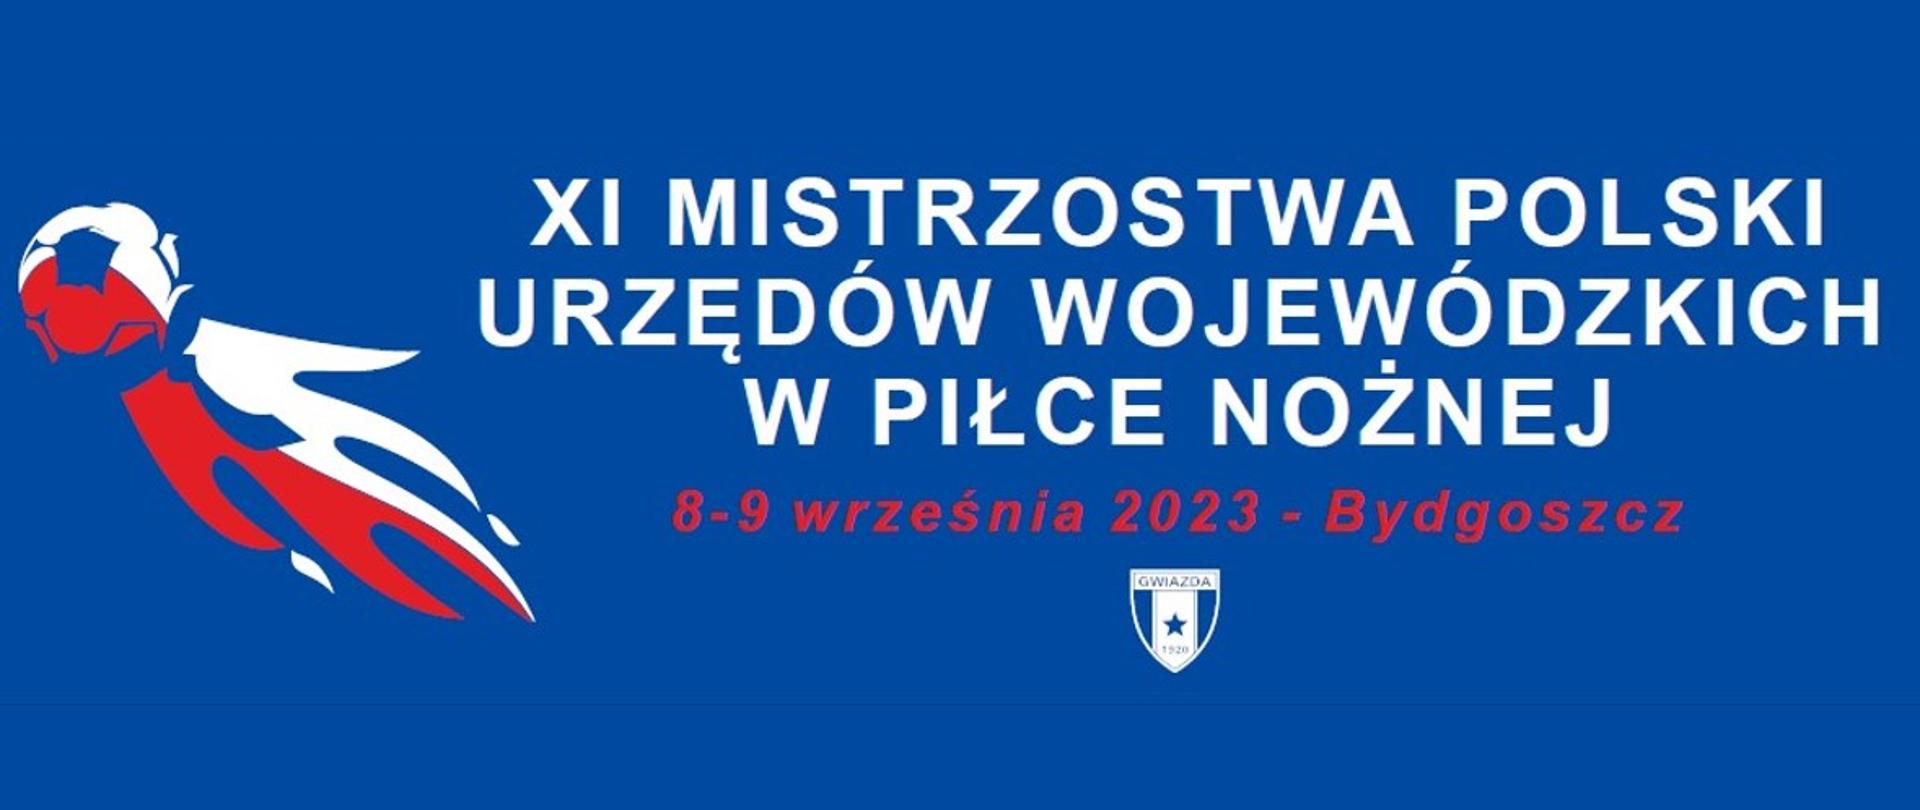 XI Mistrzostwa Polski Urzędów Wojewódzkich w Piłce Nożnej 